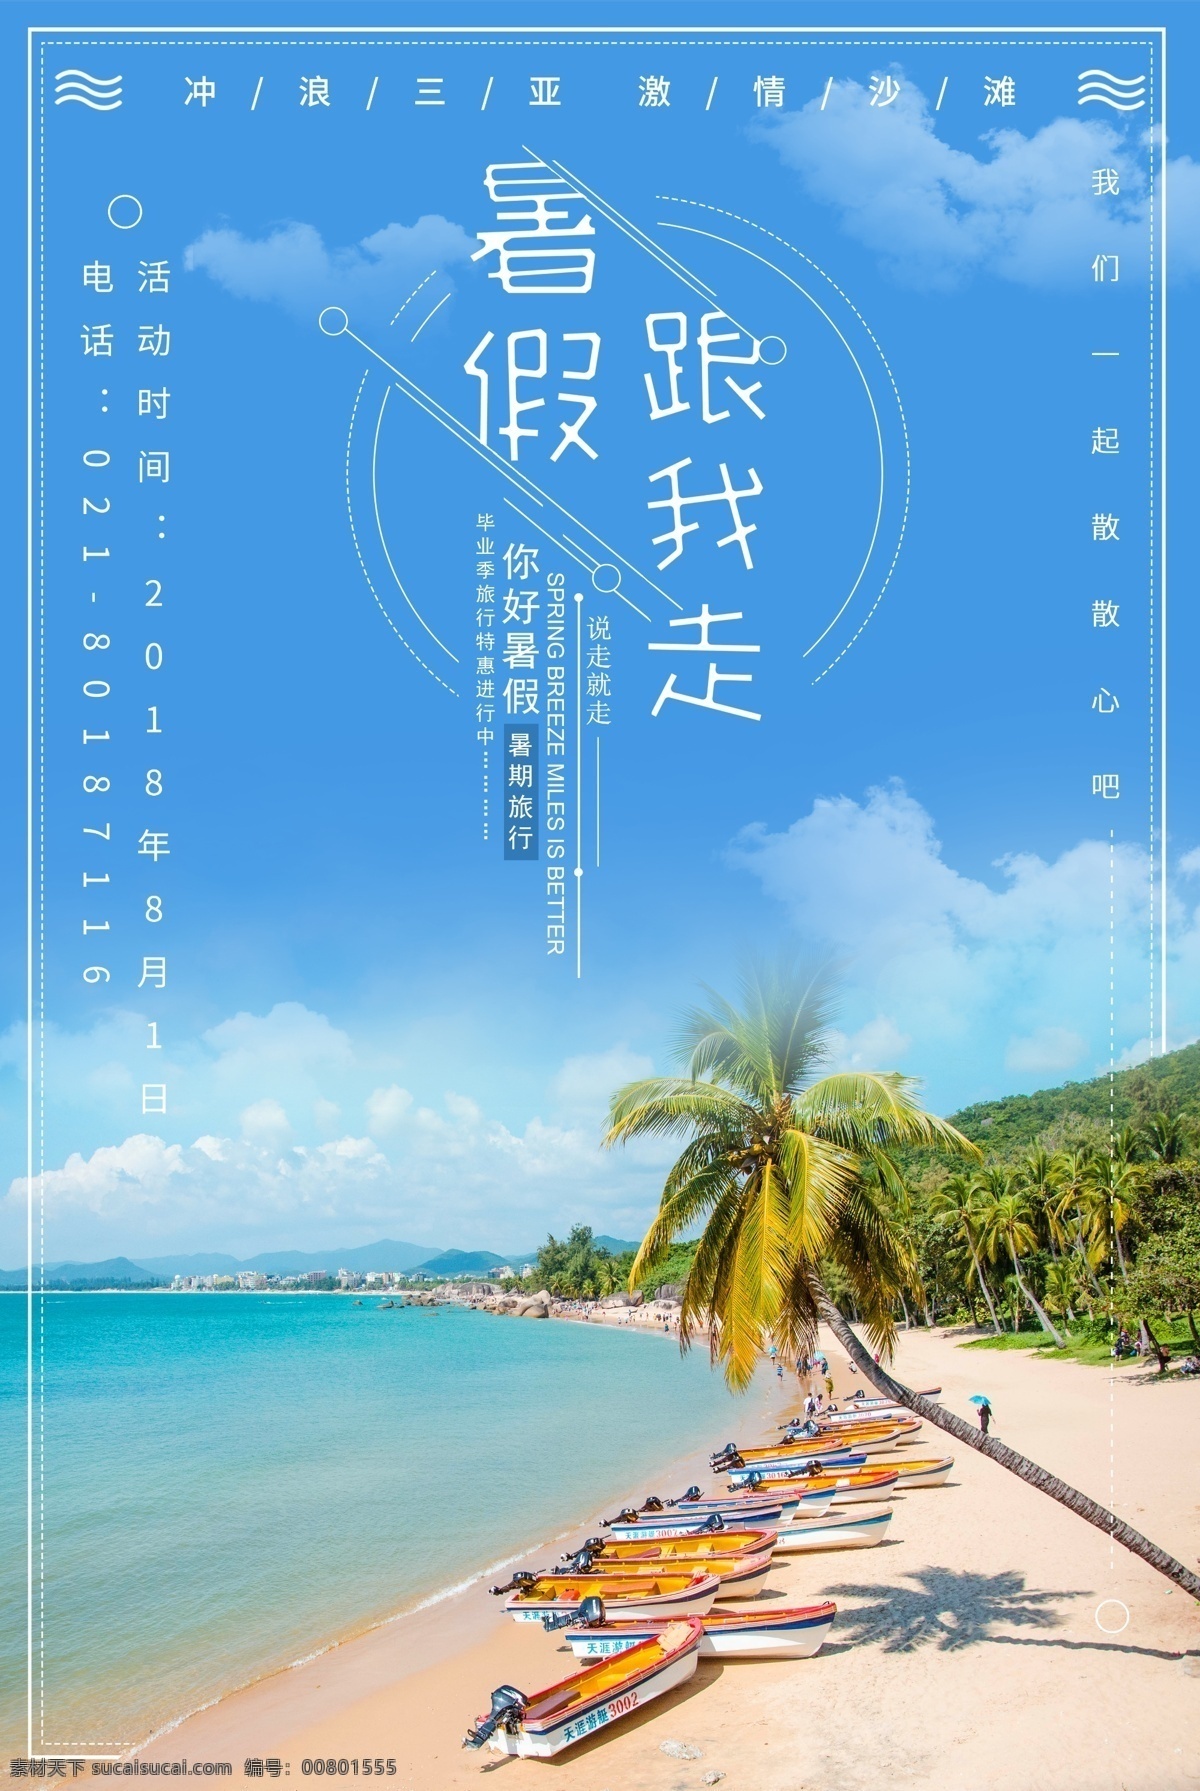 假日旅游海报 假日旅游 旅行 旅游 设计模板 夏日旅游 旅游海报 结伴同行